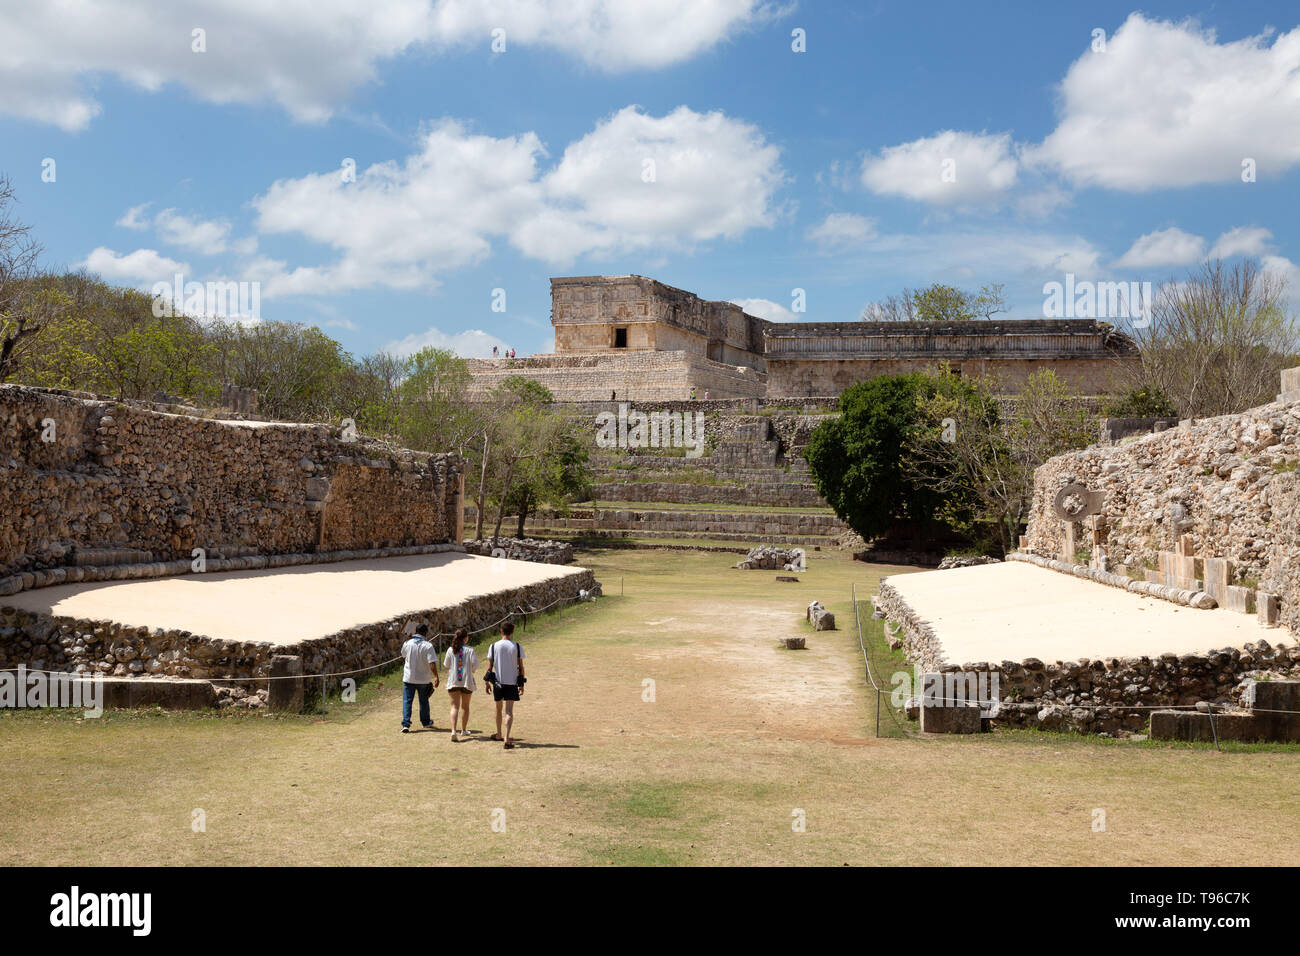 Maya ball, un jeu de balle ou ; site du patrimoine mondial de l'ruines mayas, Uxmal, Mexique Amérique Latine Banque D'Images